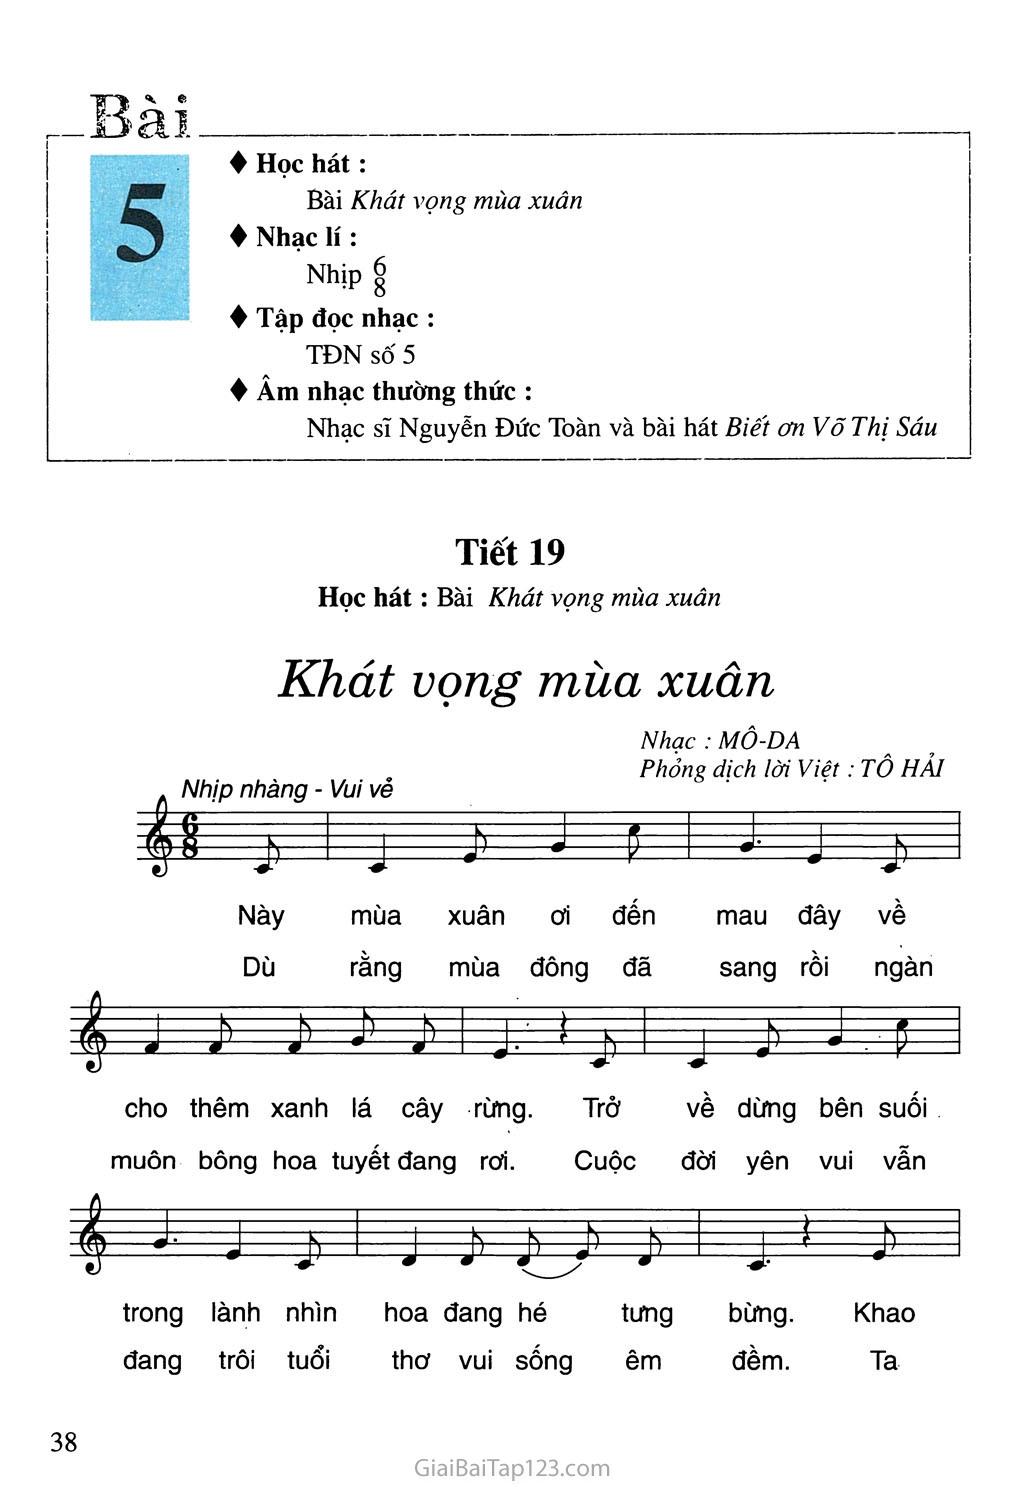 Tiết 19. Học hát: Bài Khát vọng mùa xuân trang 1